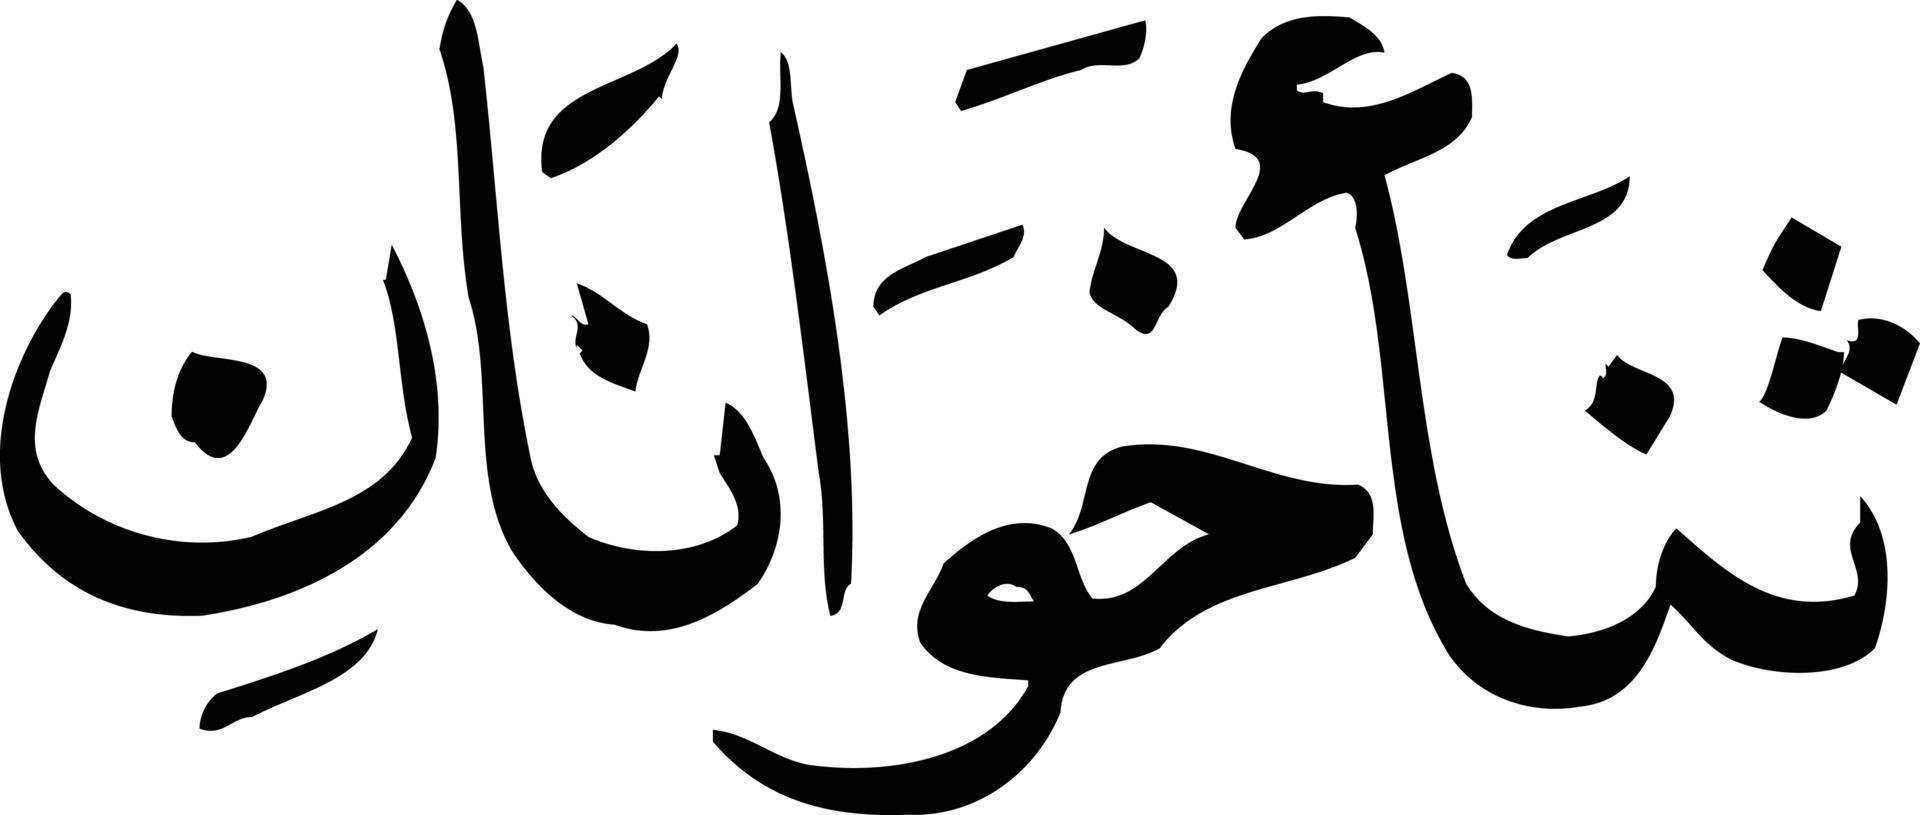 sana khawanan título islámico urdu árabe caligrafía vector libre